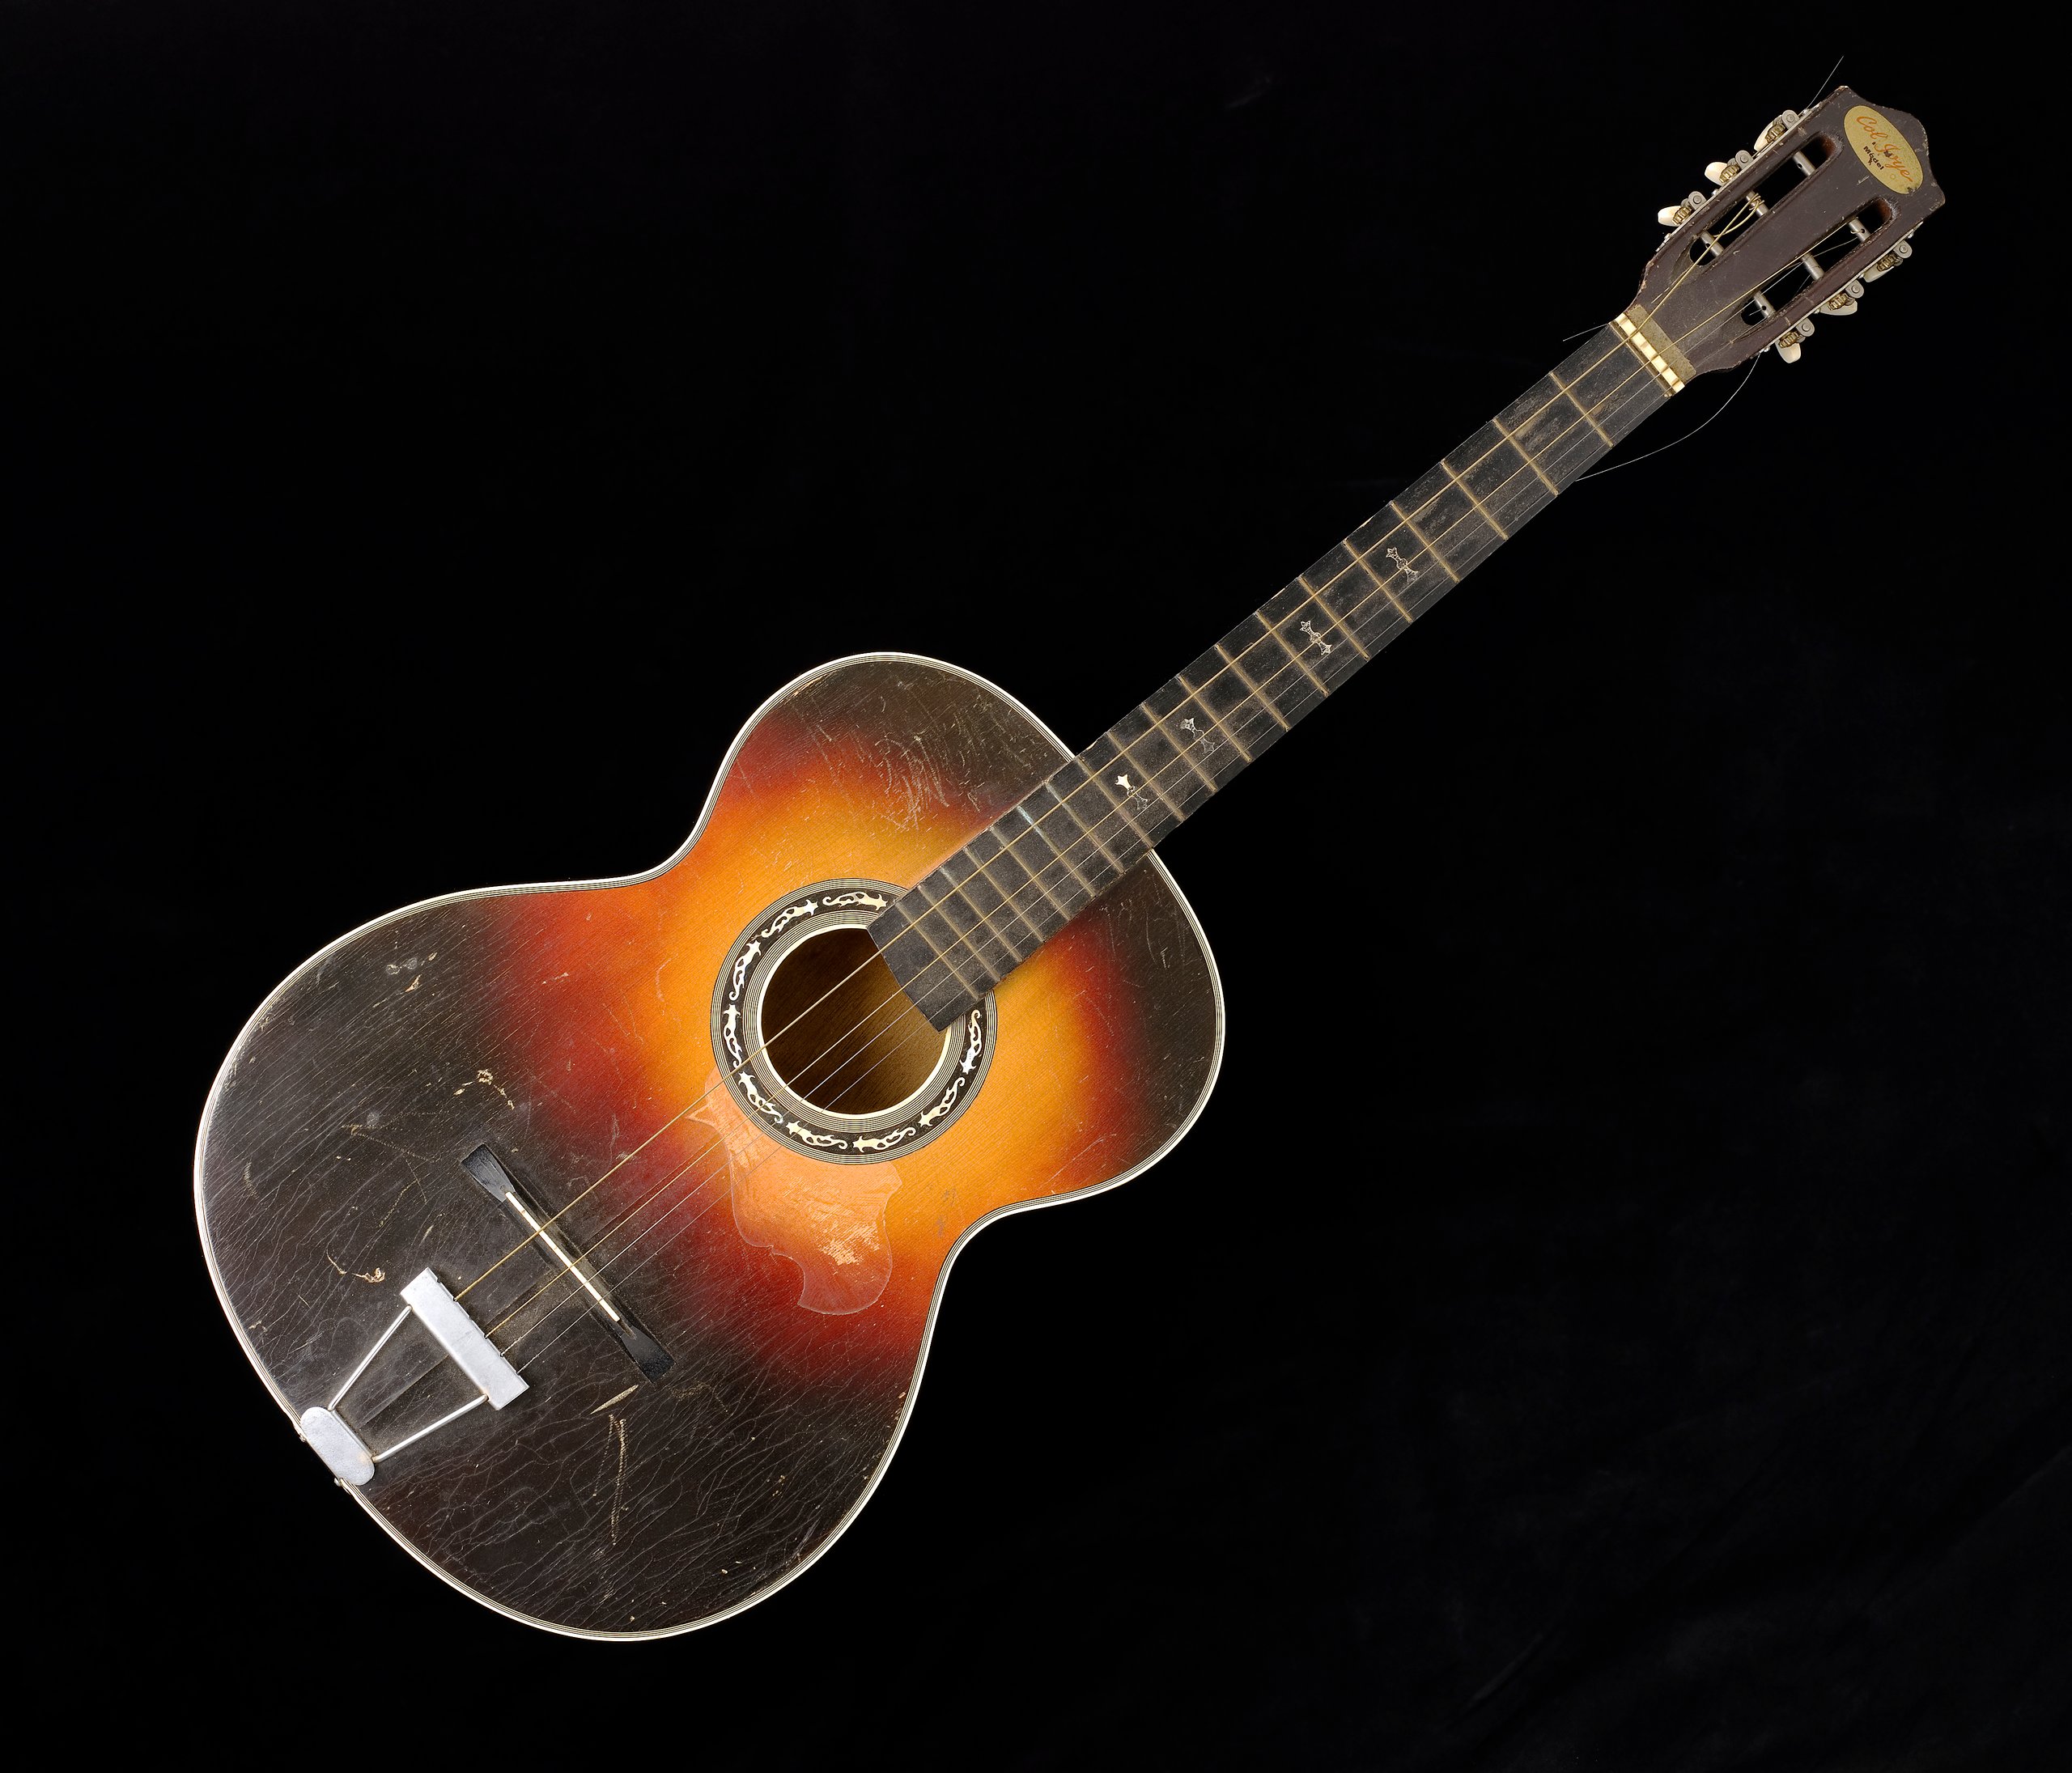 Guitar, 'Col Joye' model